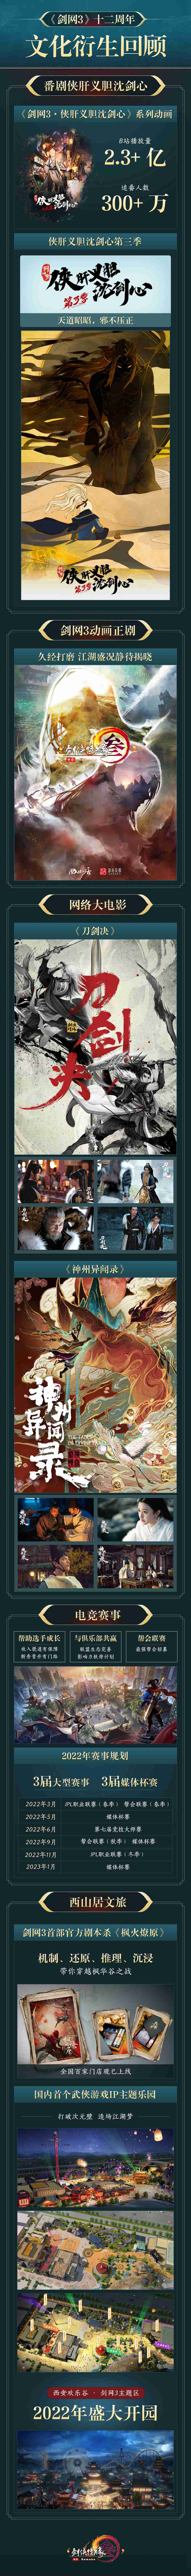 年度资料片“北天药宗”公布 《剑网3》十二周年发布会回顾